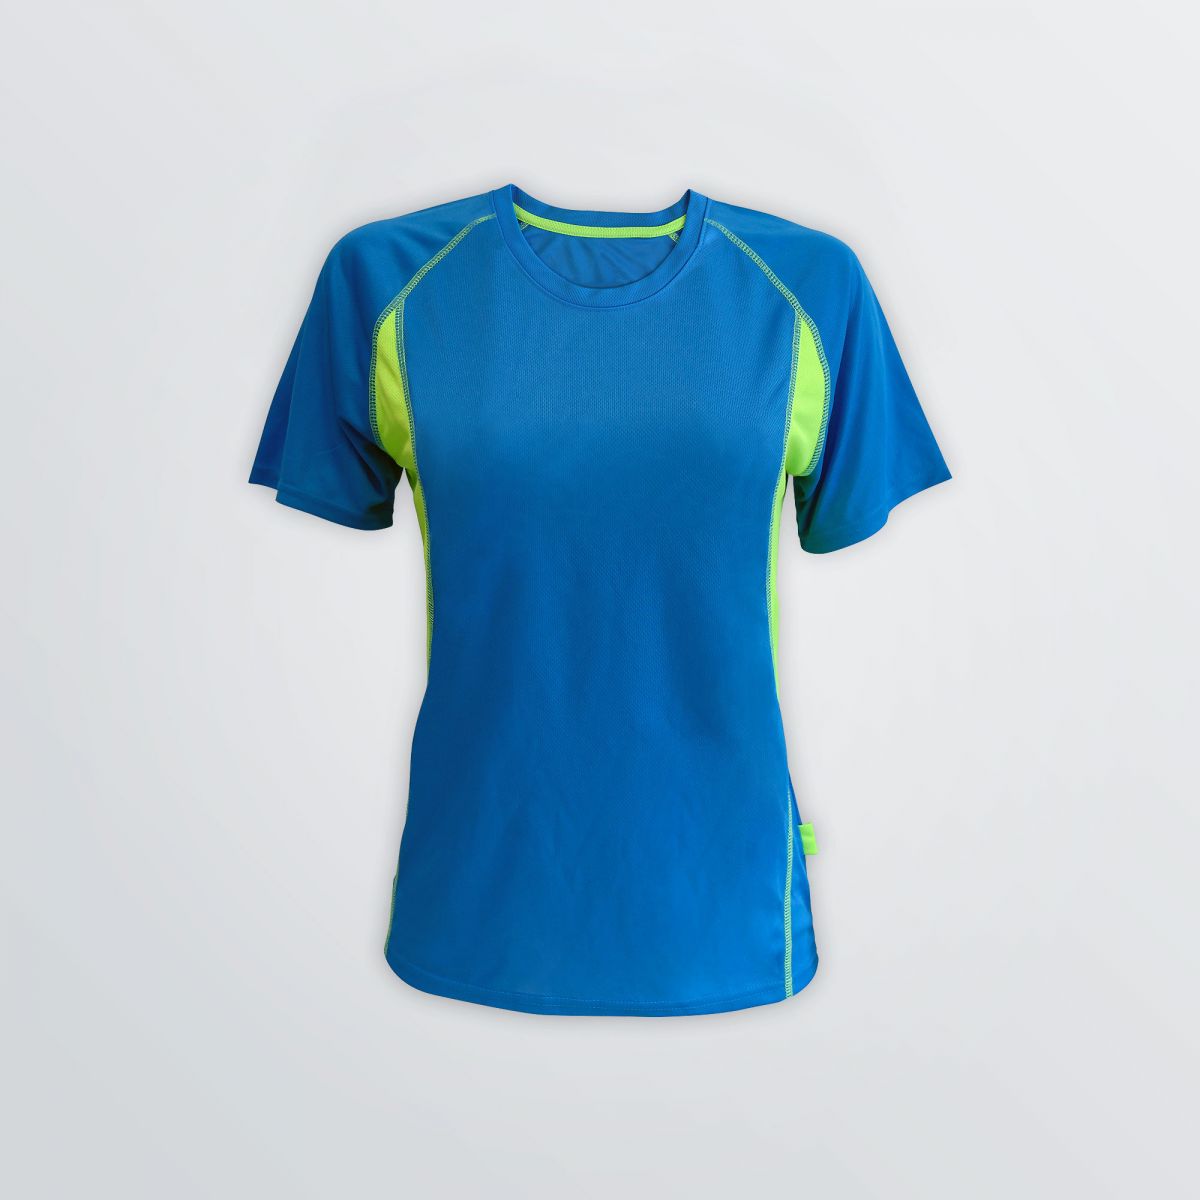 Winner Tech Shirt aus Funktionsmaterial zum Individualisieren als Produktbeispiel in blauer Farbe mit grünen Seiteneinsätzen und Flatlocks